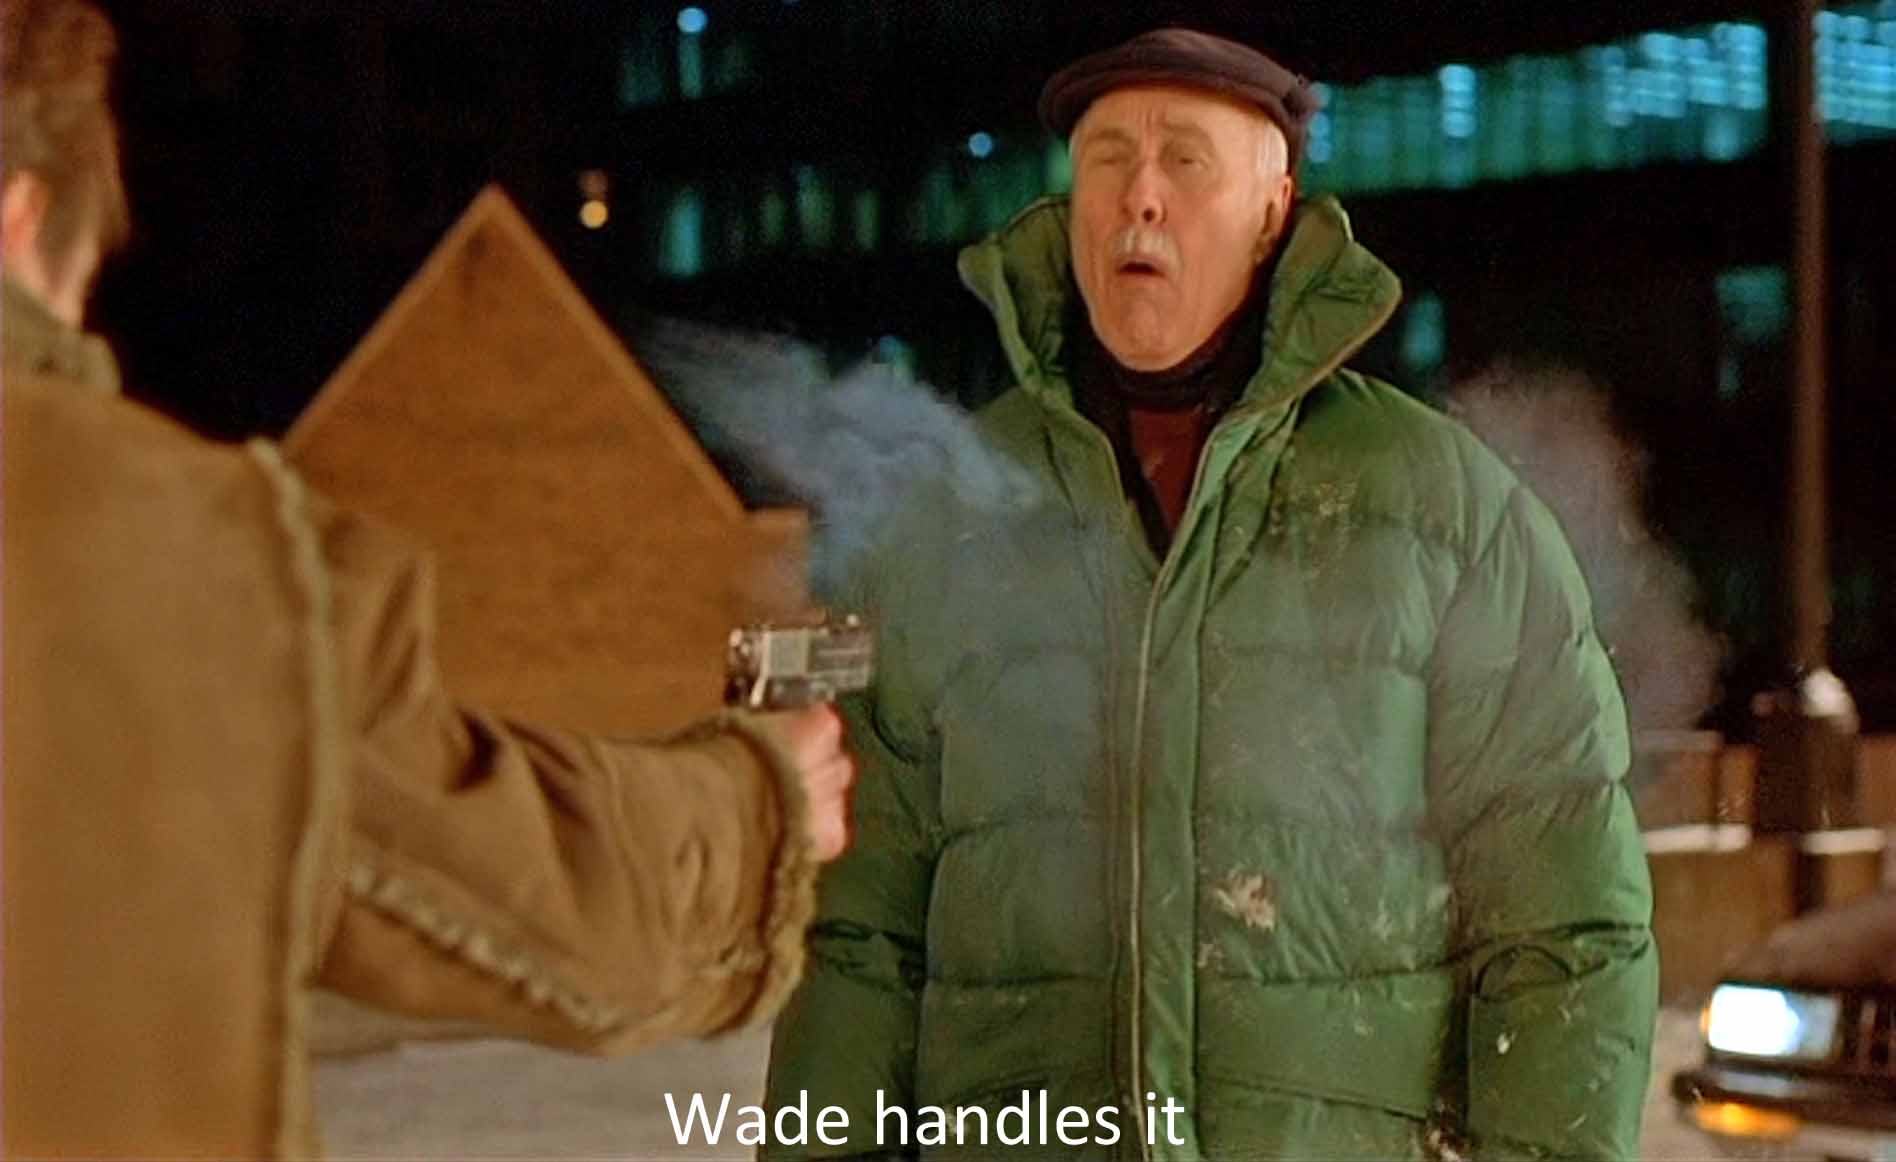 Wade handles it